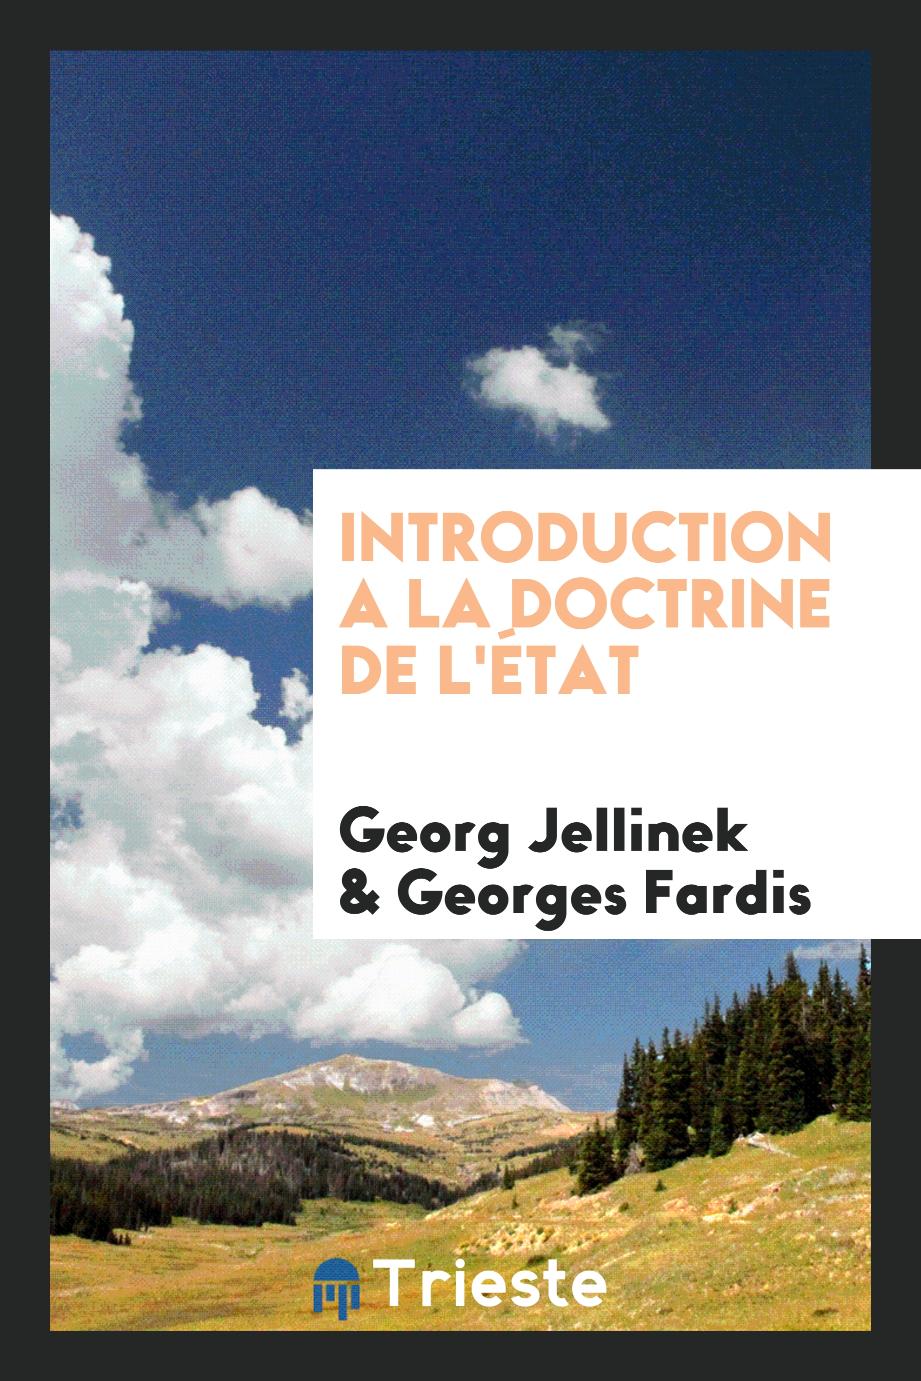 Georg Jellinek, Georges Fardis - Introduction a la Doctrine de l'État